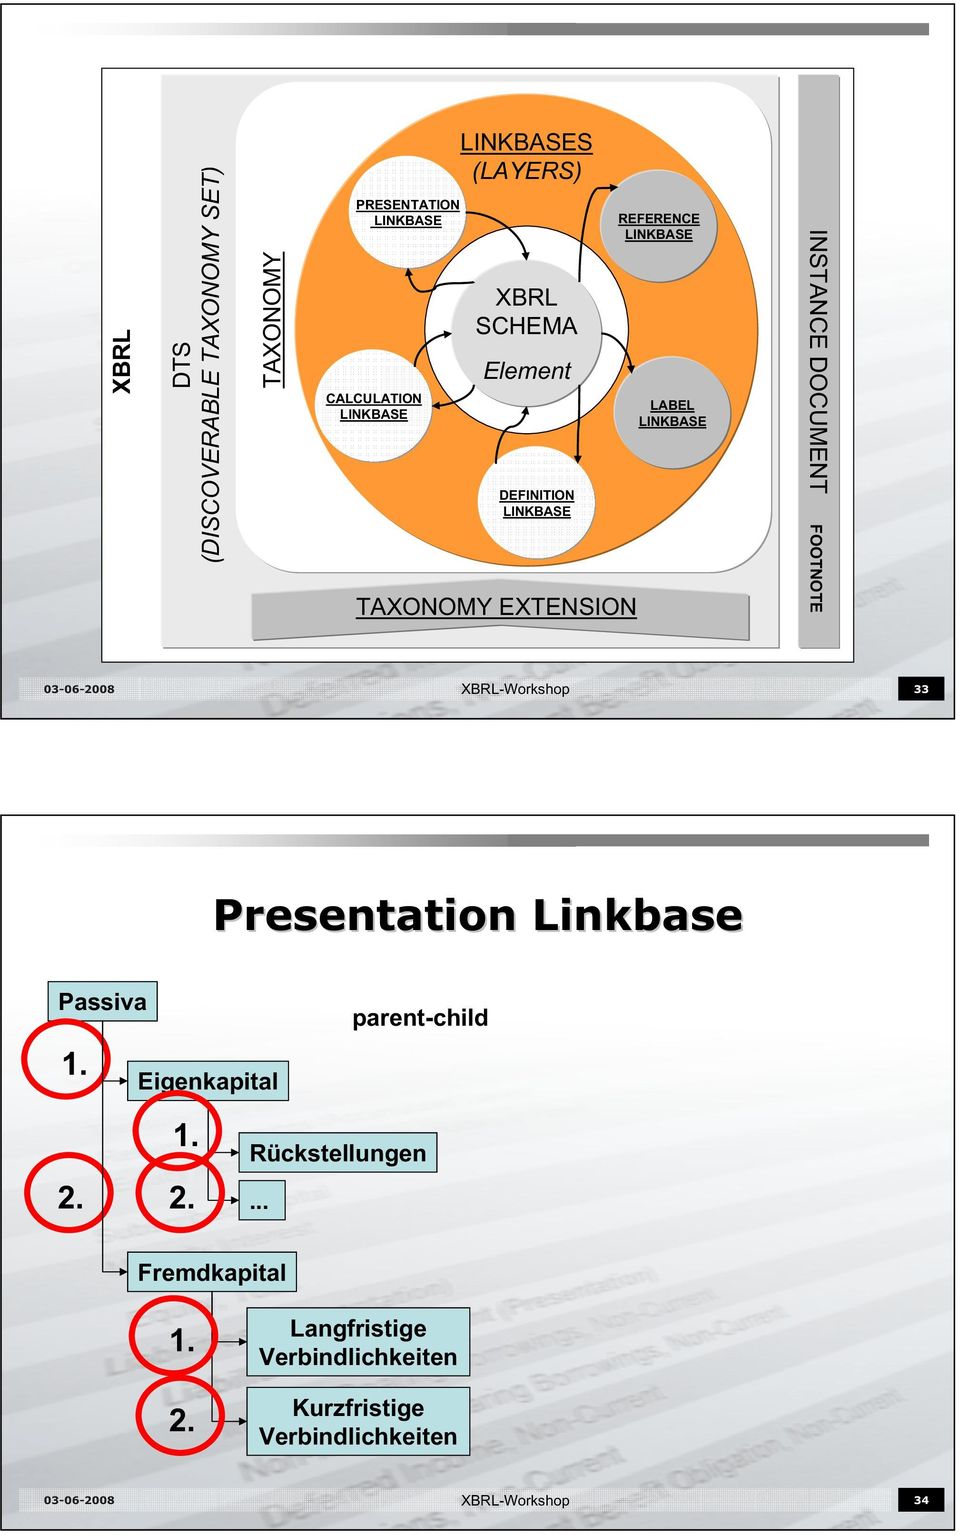 XBRL-Workshop 33 Presentation Linkbase Passiva 1. Eigenkapital parent-child 2. 1. 2. Rückstellungen.